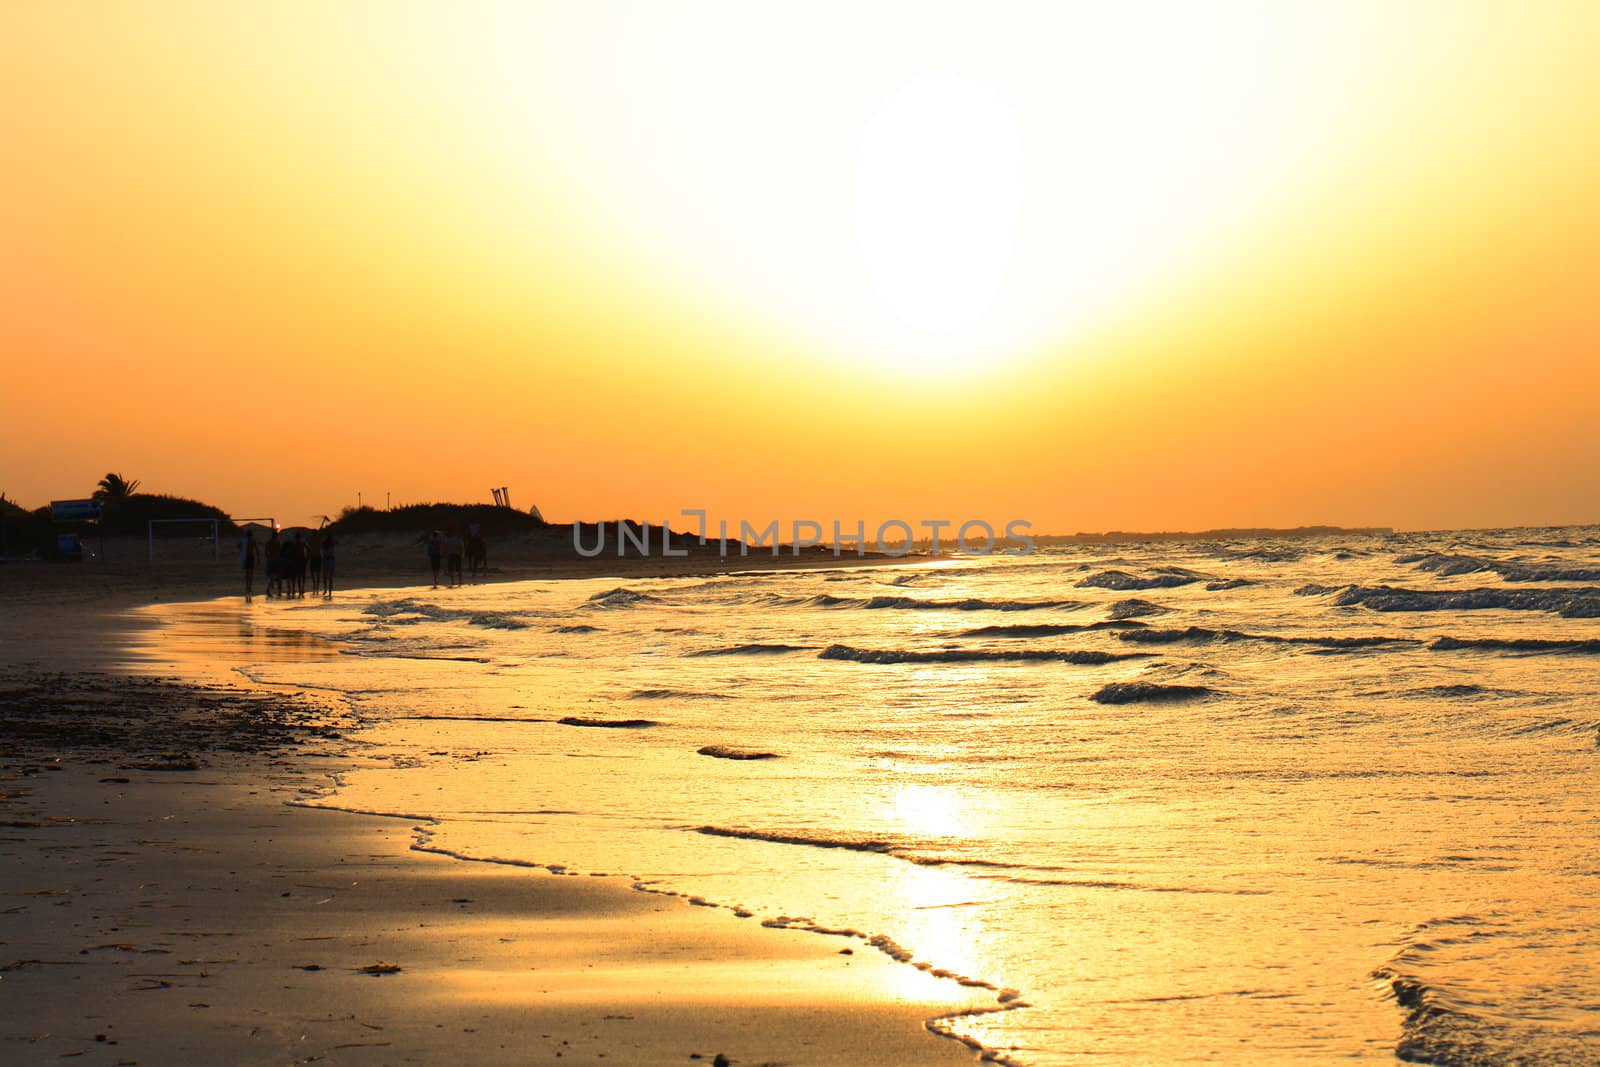 sunset on the Tunisian beach (Djerba island) 